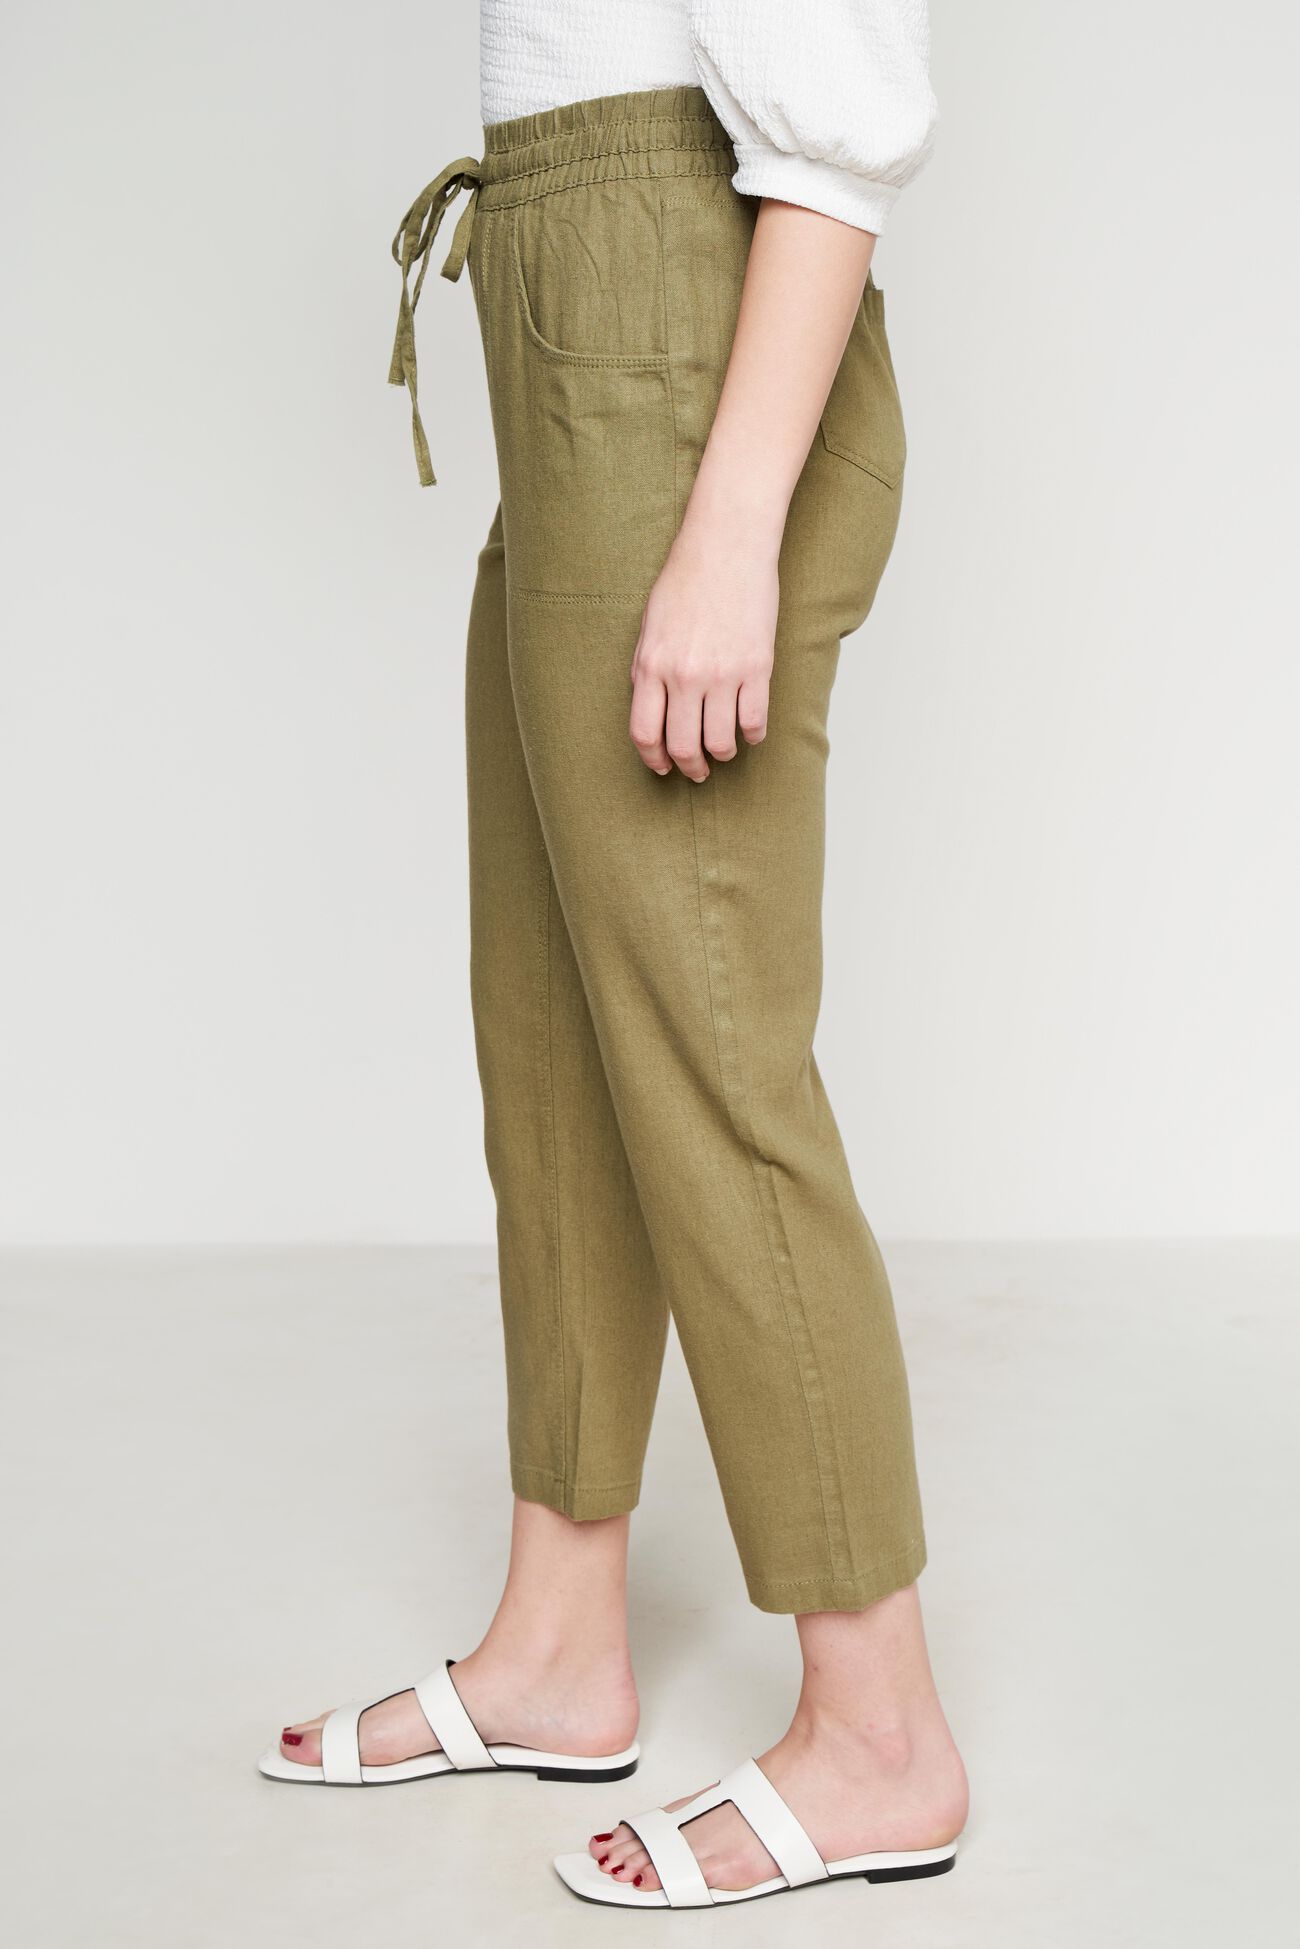 Plus Size Plus Size Olive Cotton Linen Pants Online in India